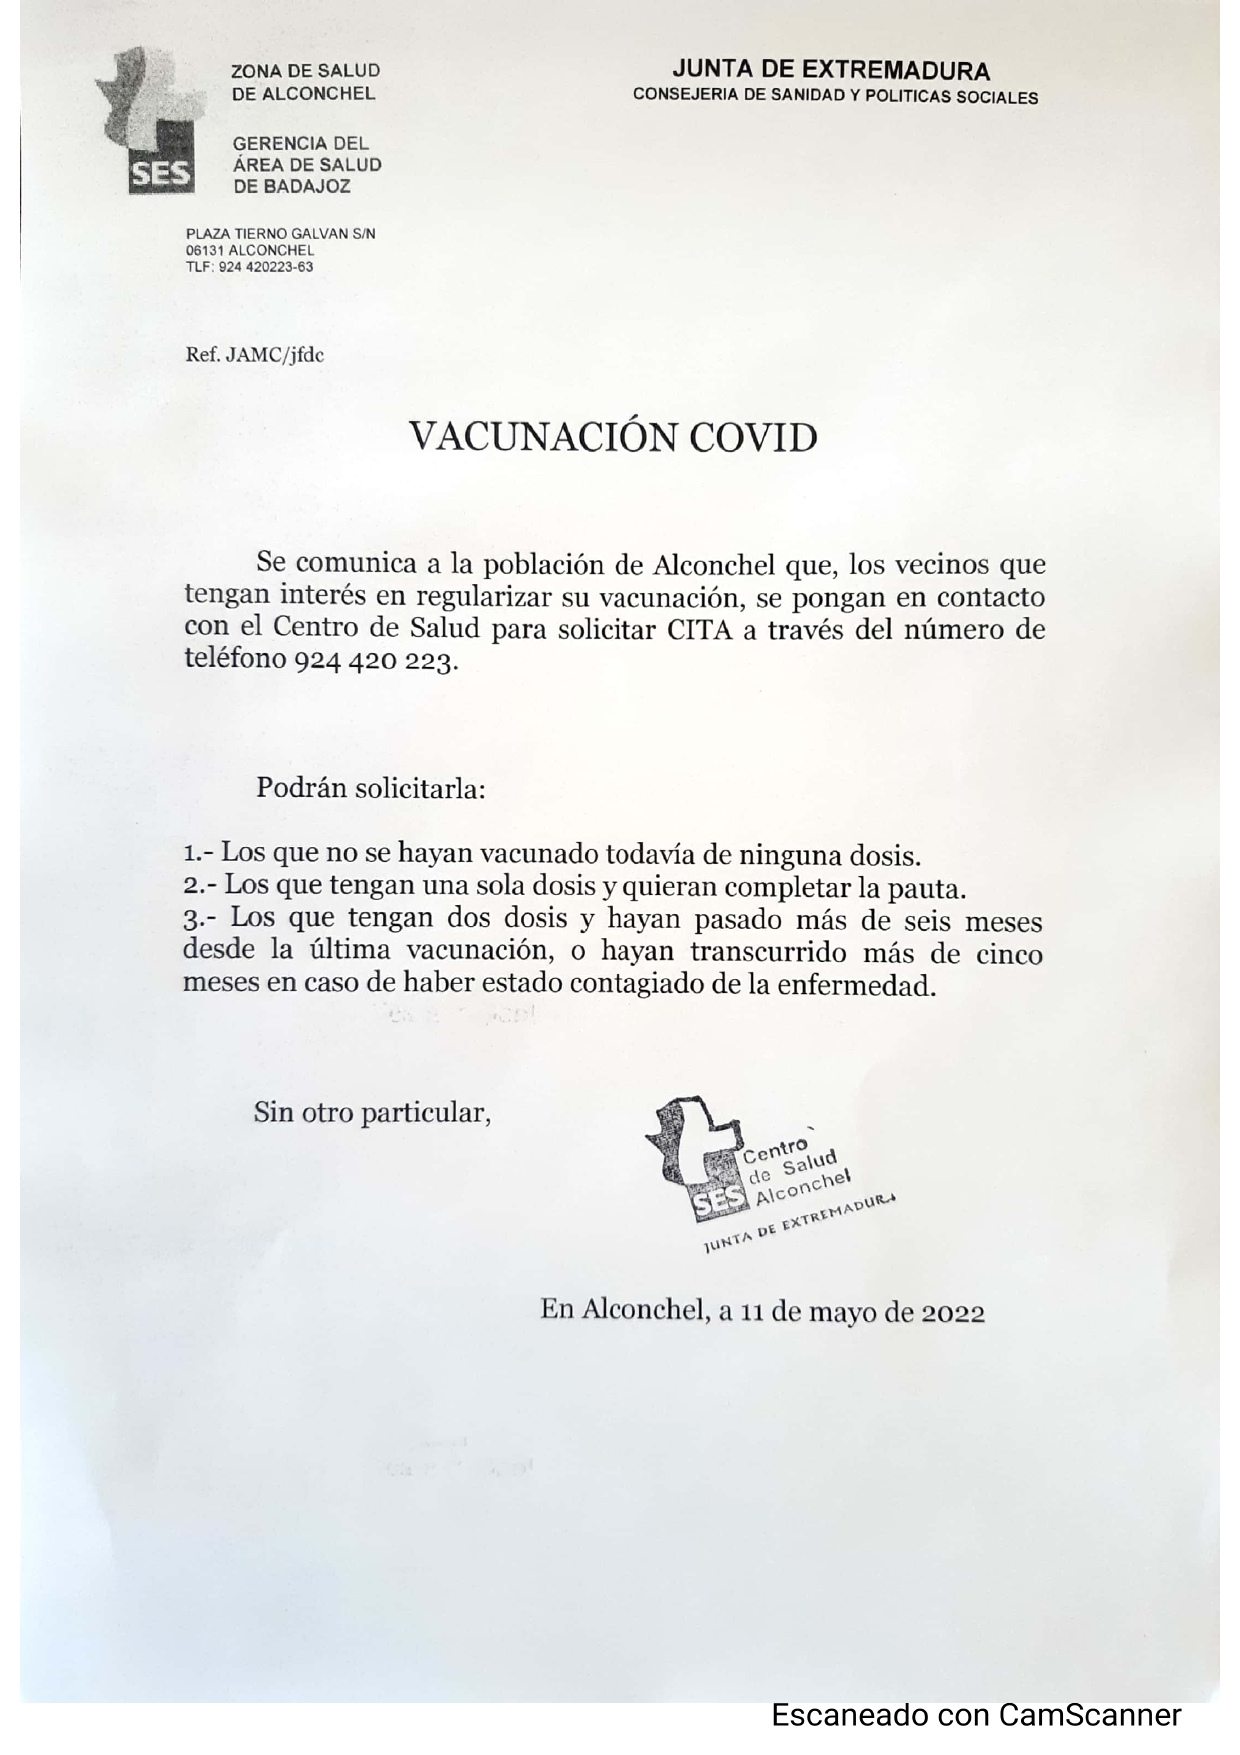 VACUNACIÓN COVID EN EL CENTRO DE SALUD DE ALCONCHEL